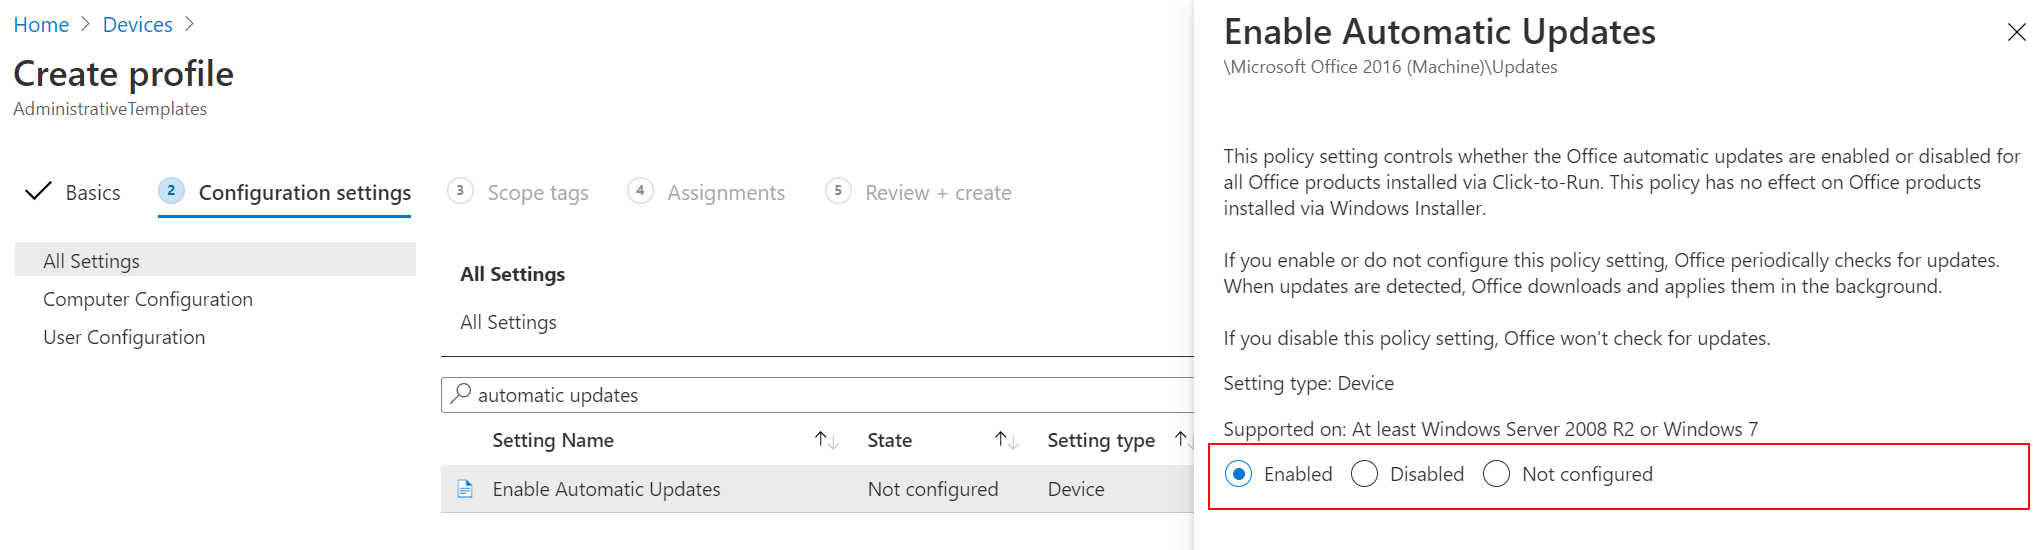 Captura de tela que mostra a habilitação de atualizações automáticas do Office usando um modelo administrativo no Microsoft Intune.